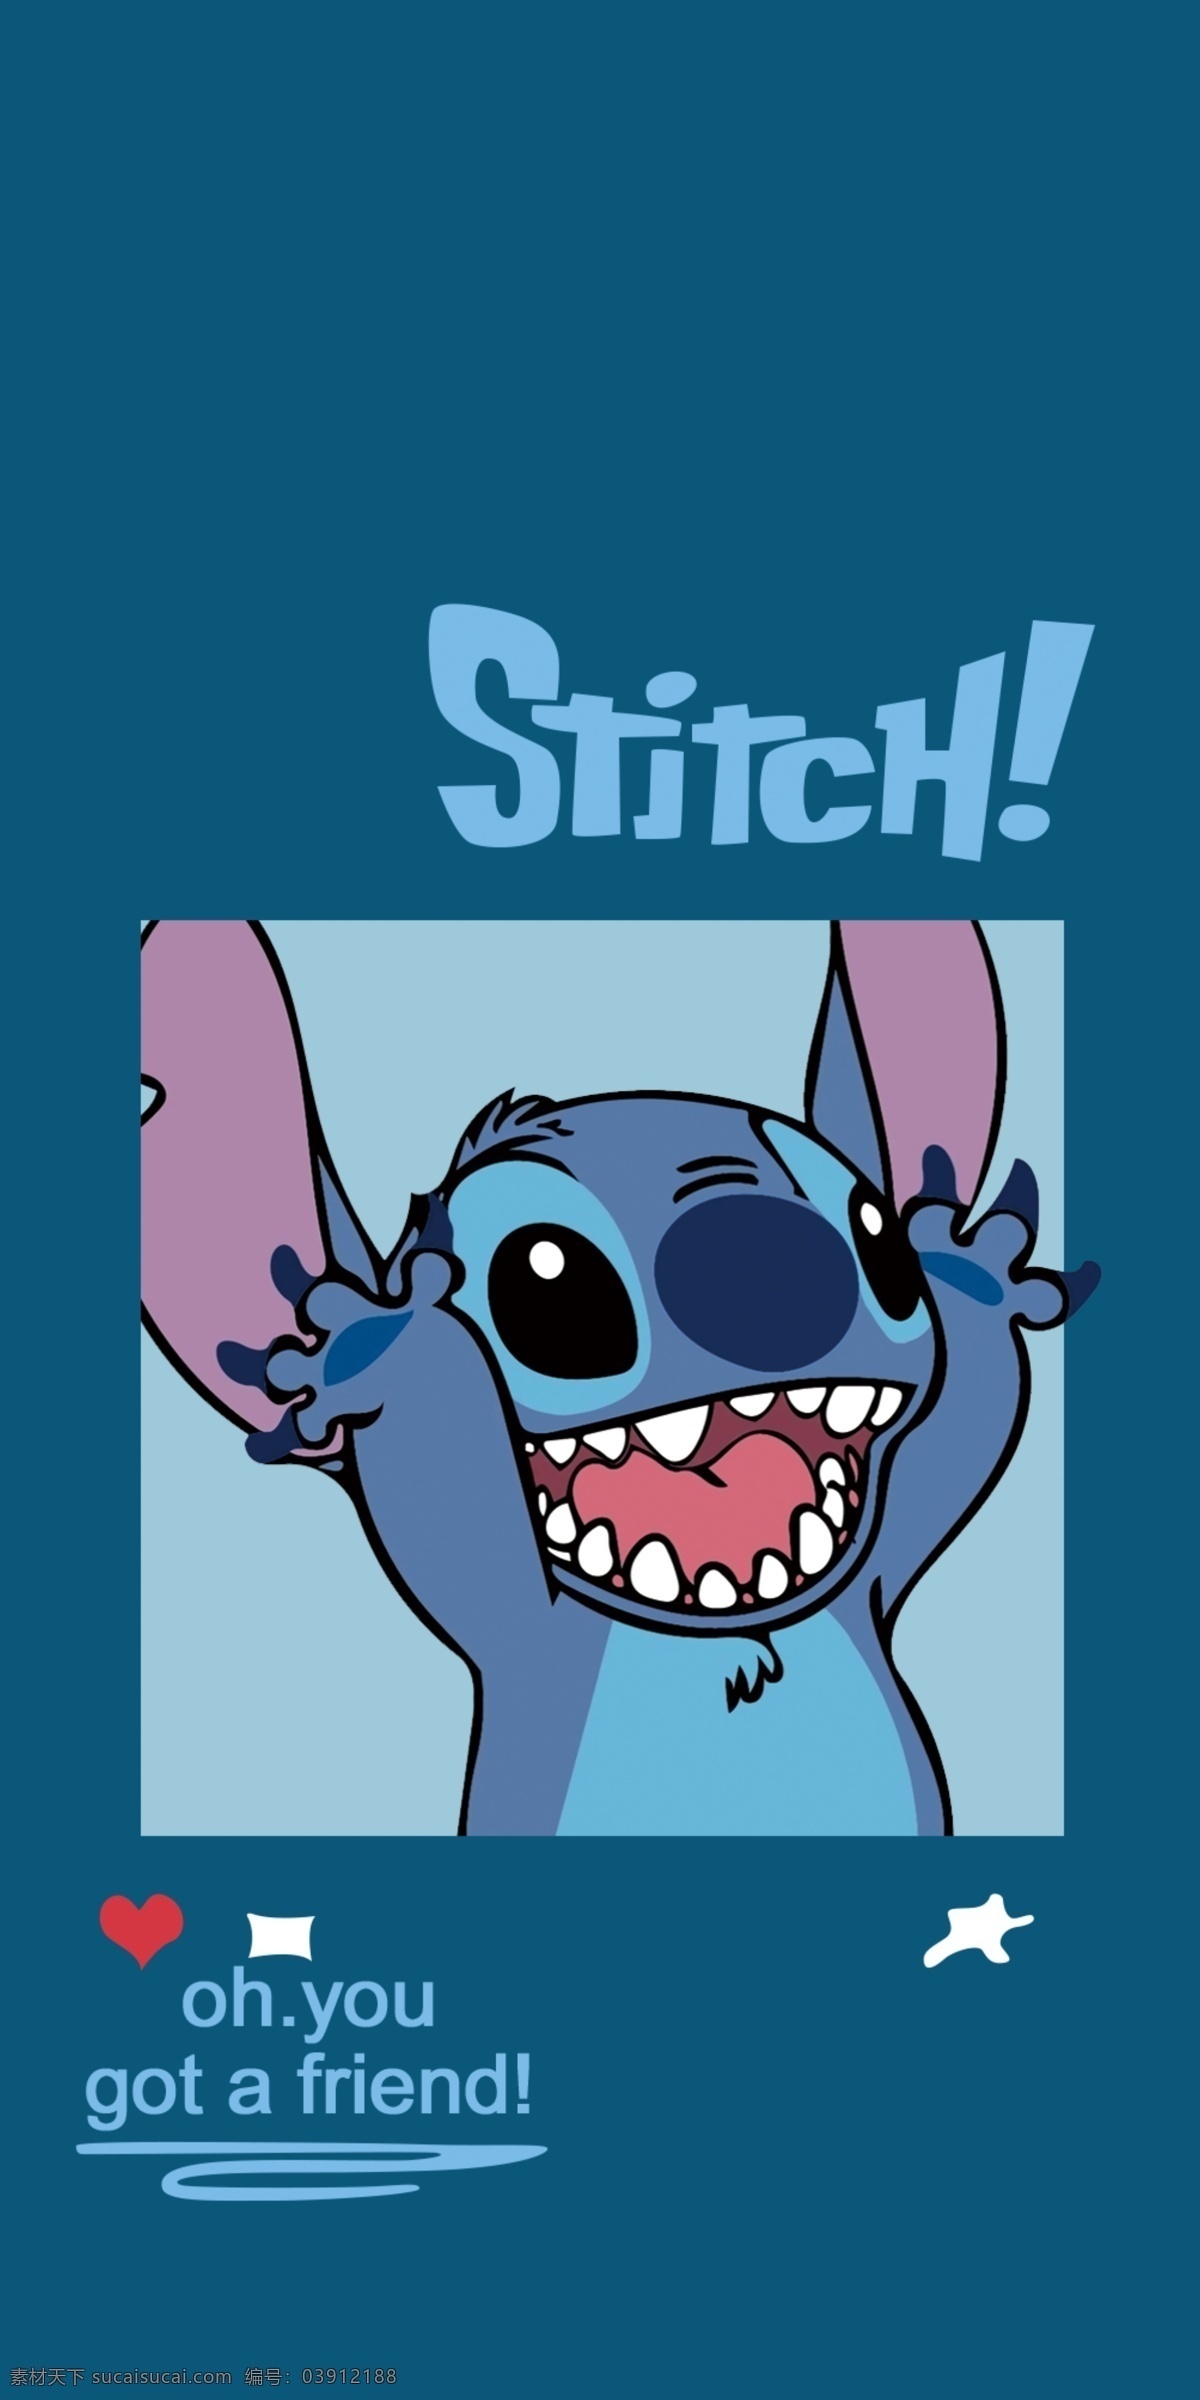 搞怪史迪仔 可爱史迪仔 动漫 手机壳 可爱 stitch 萌 卖萌 动漫动画 动漫人物